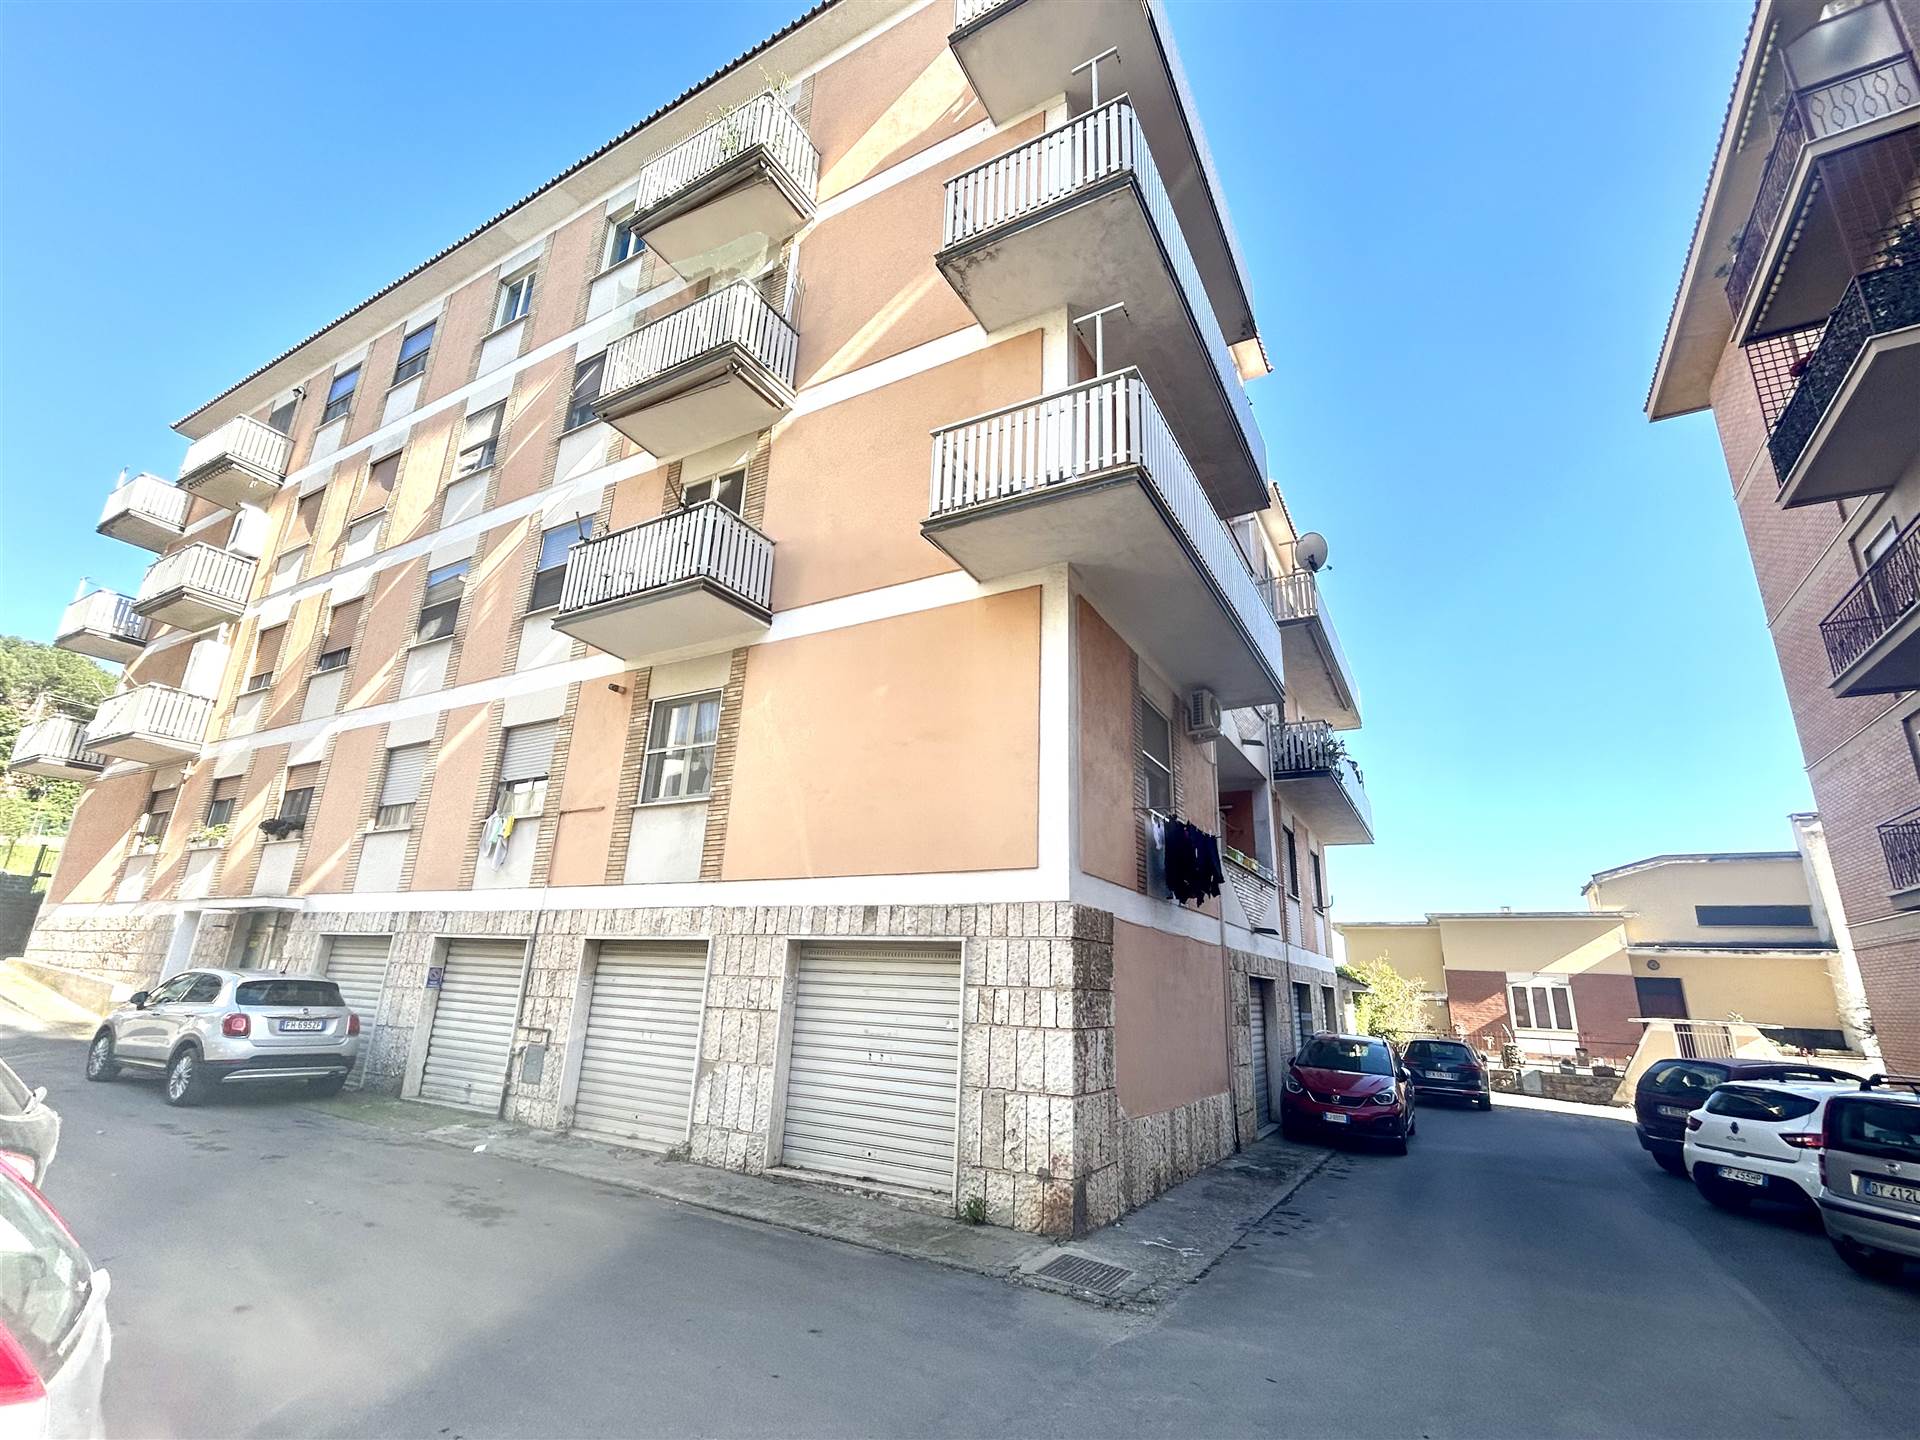 Appartamento in vendita a Tarquinia, 4 locali, prezzo € 100.000 | PortaleAgenzieImmobiliari.it